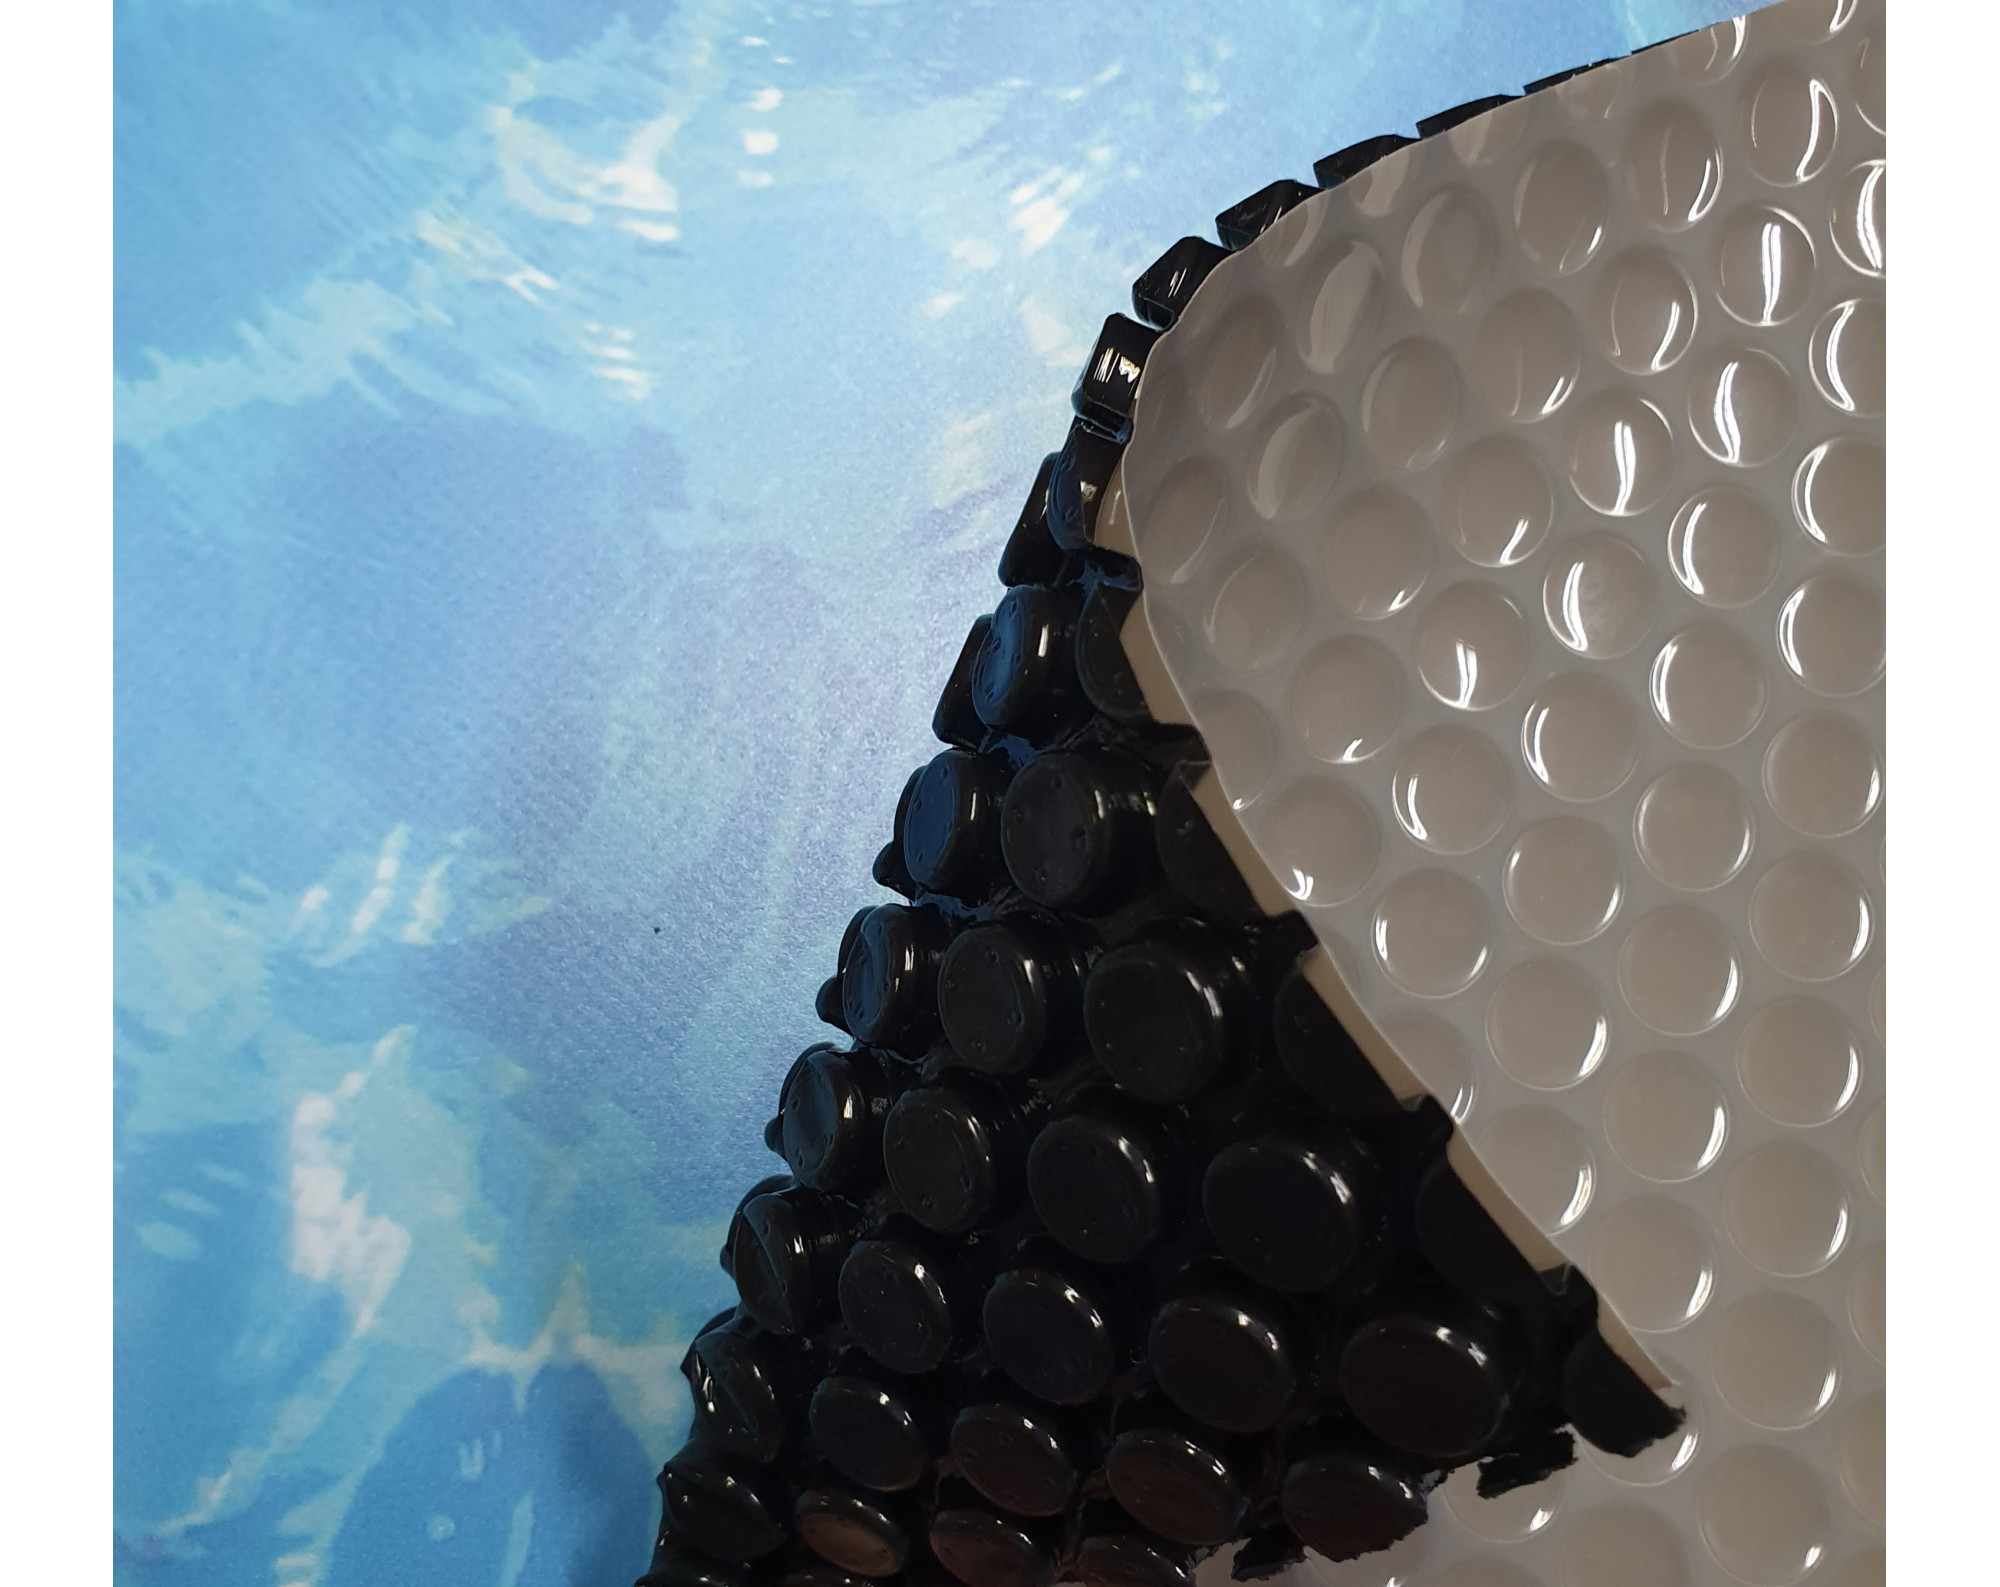 Luxe anti-alg noppenfolie (grijs-zwart 400 micron) voor Intex XTR zwembad 975x488 cm